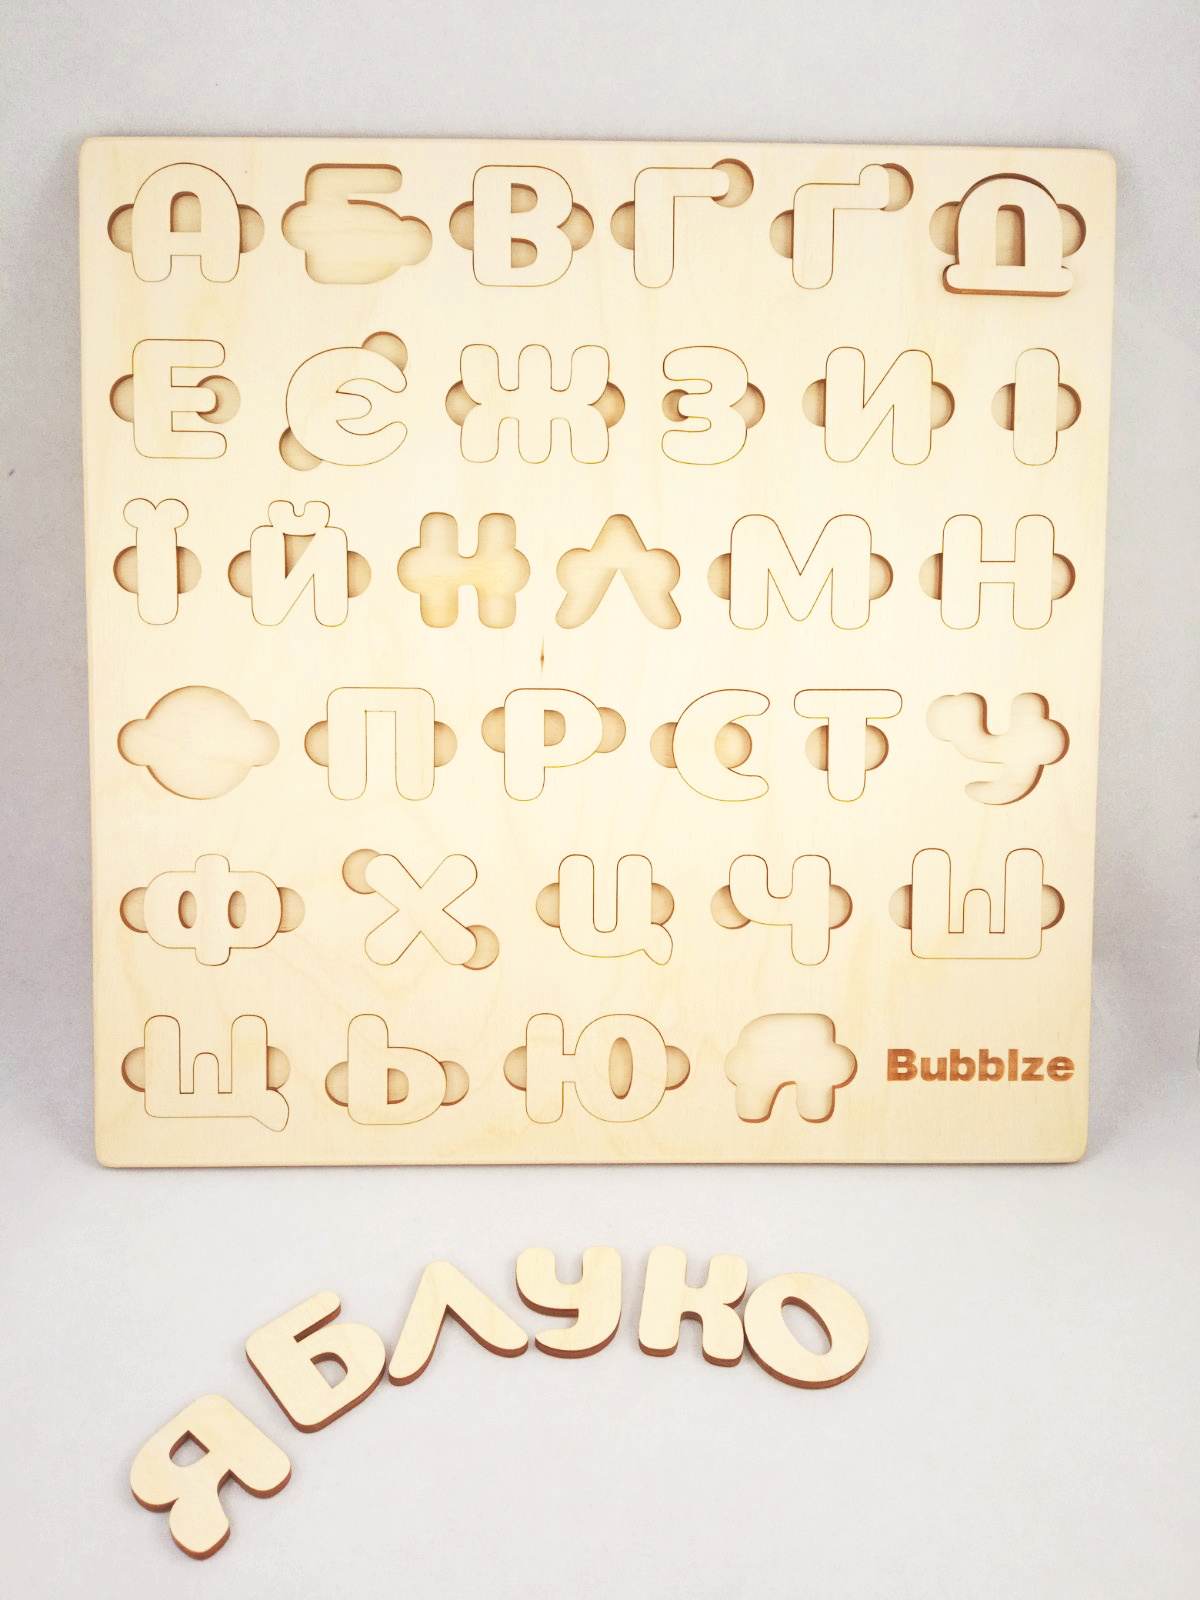 Вкладыш букв. Деревянные буквы вкладыши. Детский сортер Азбука деревянный. Деревянный алфавит сортер 30 на 30 см натурального цвета дерева.